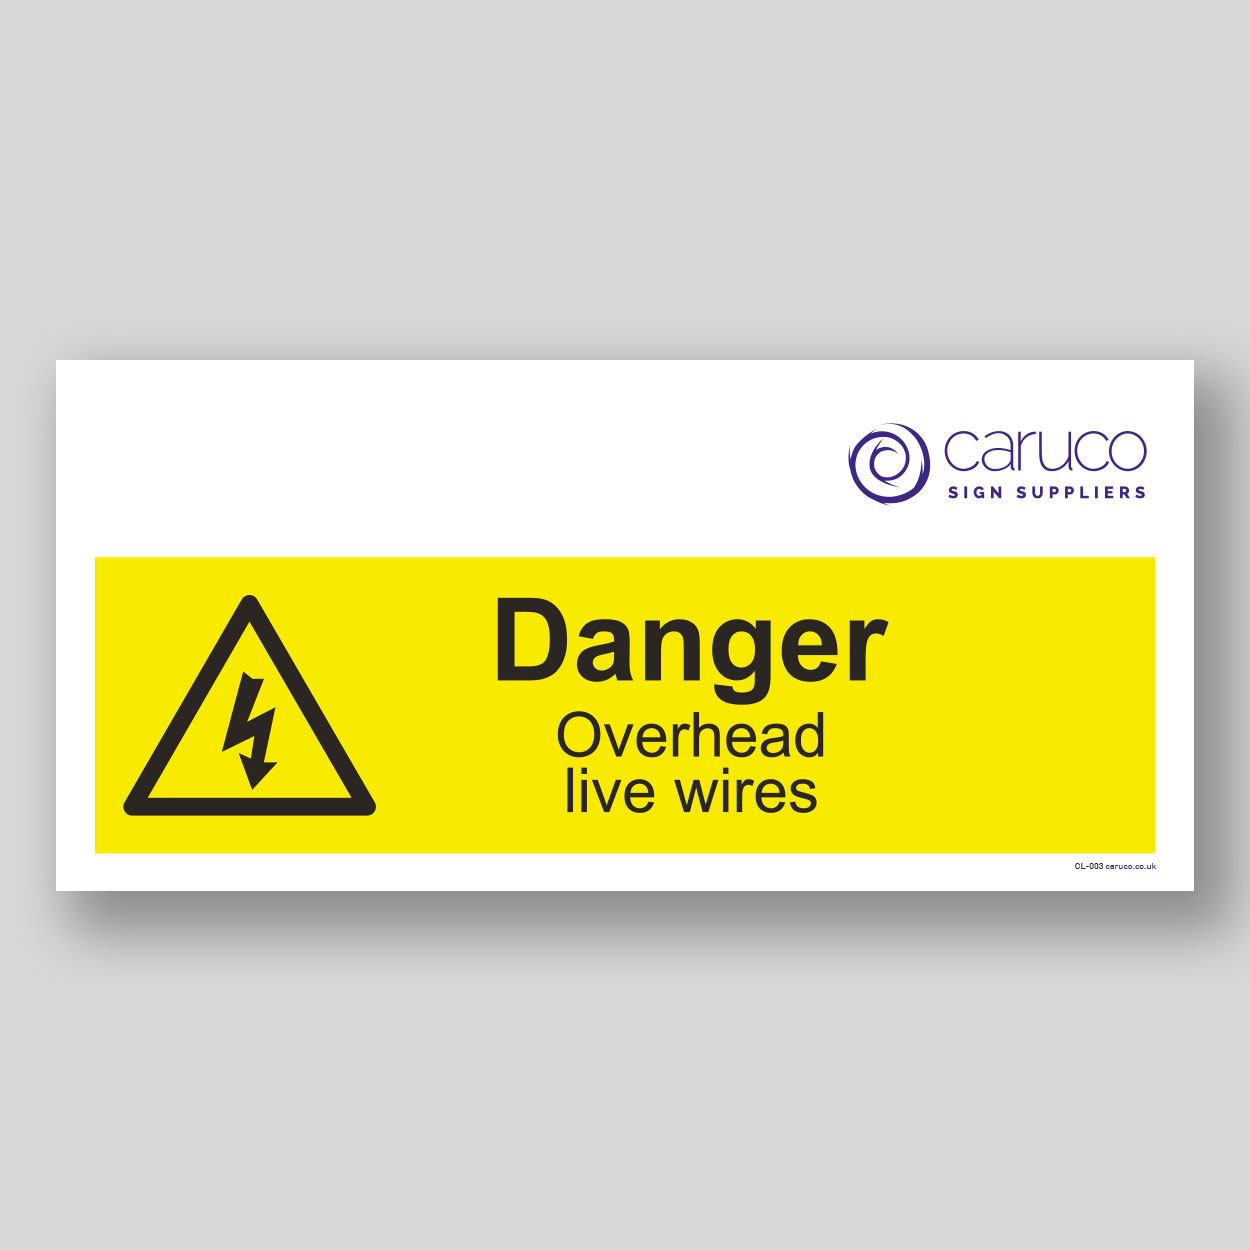 CL-003 Danger - overhead wires